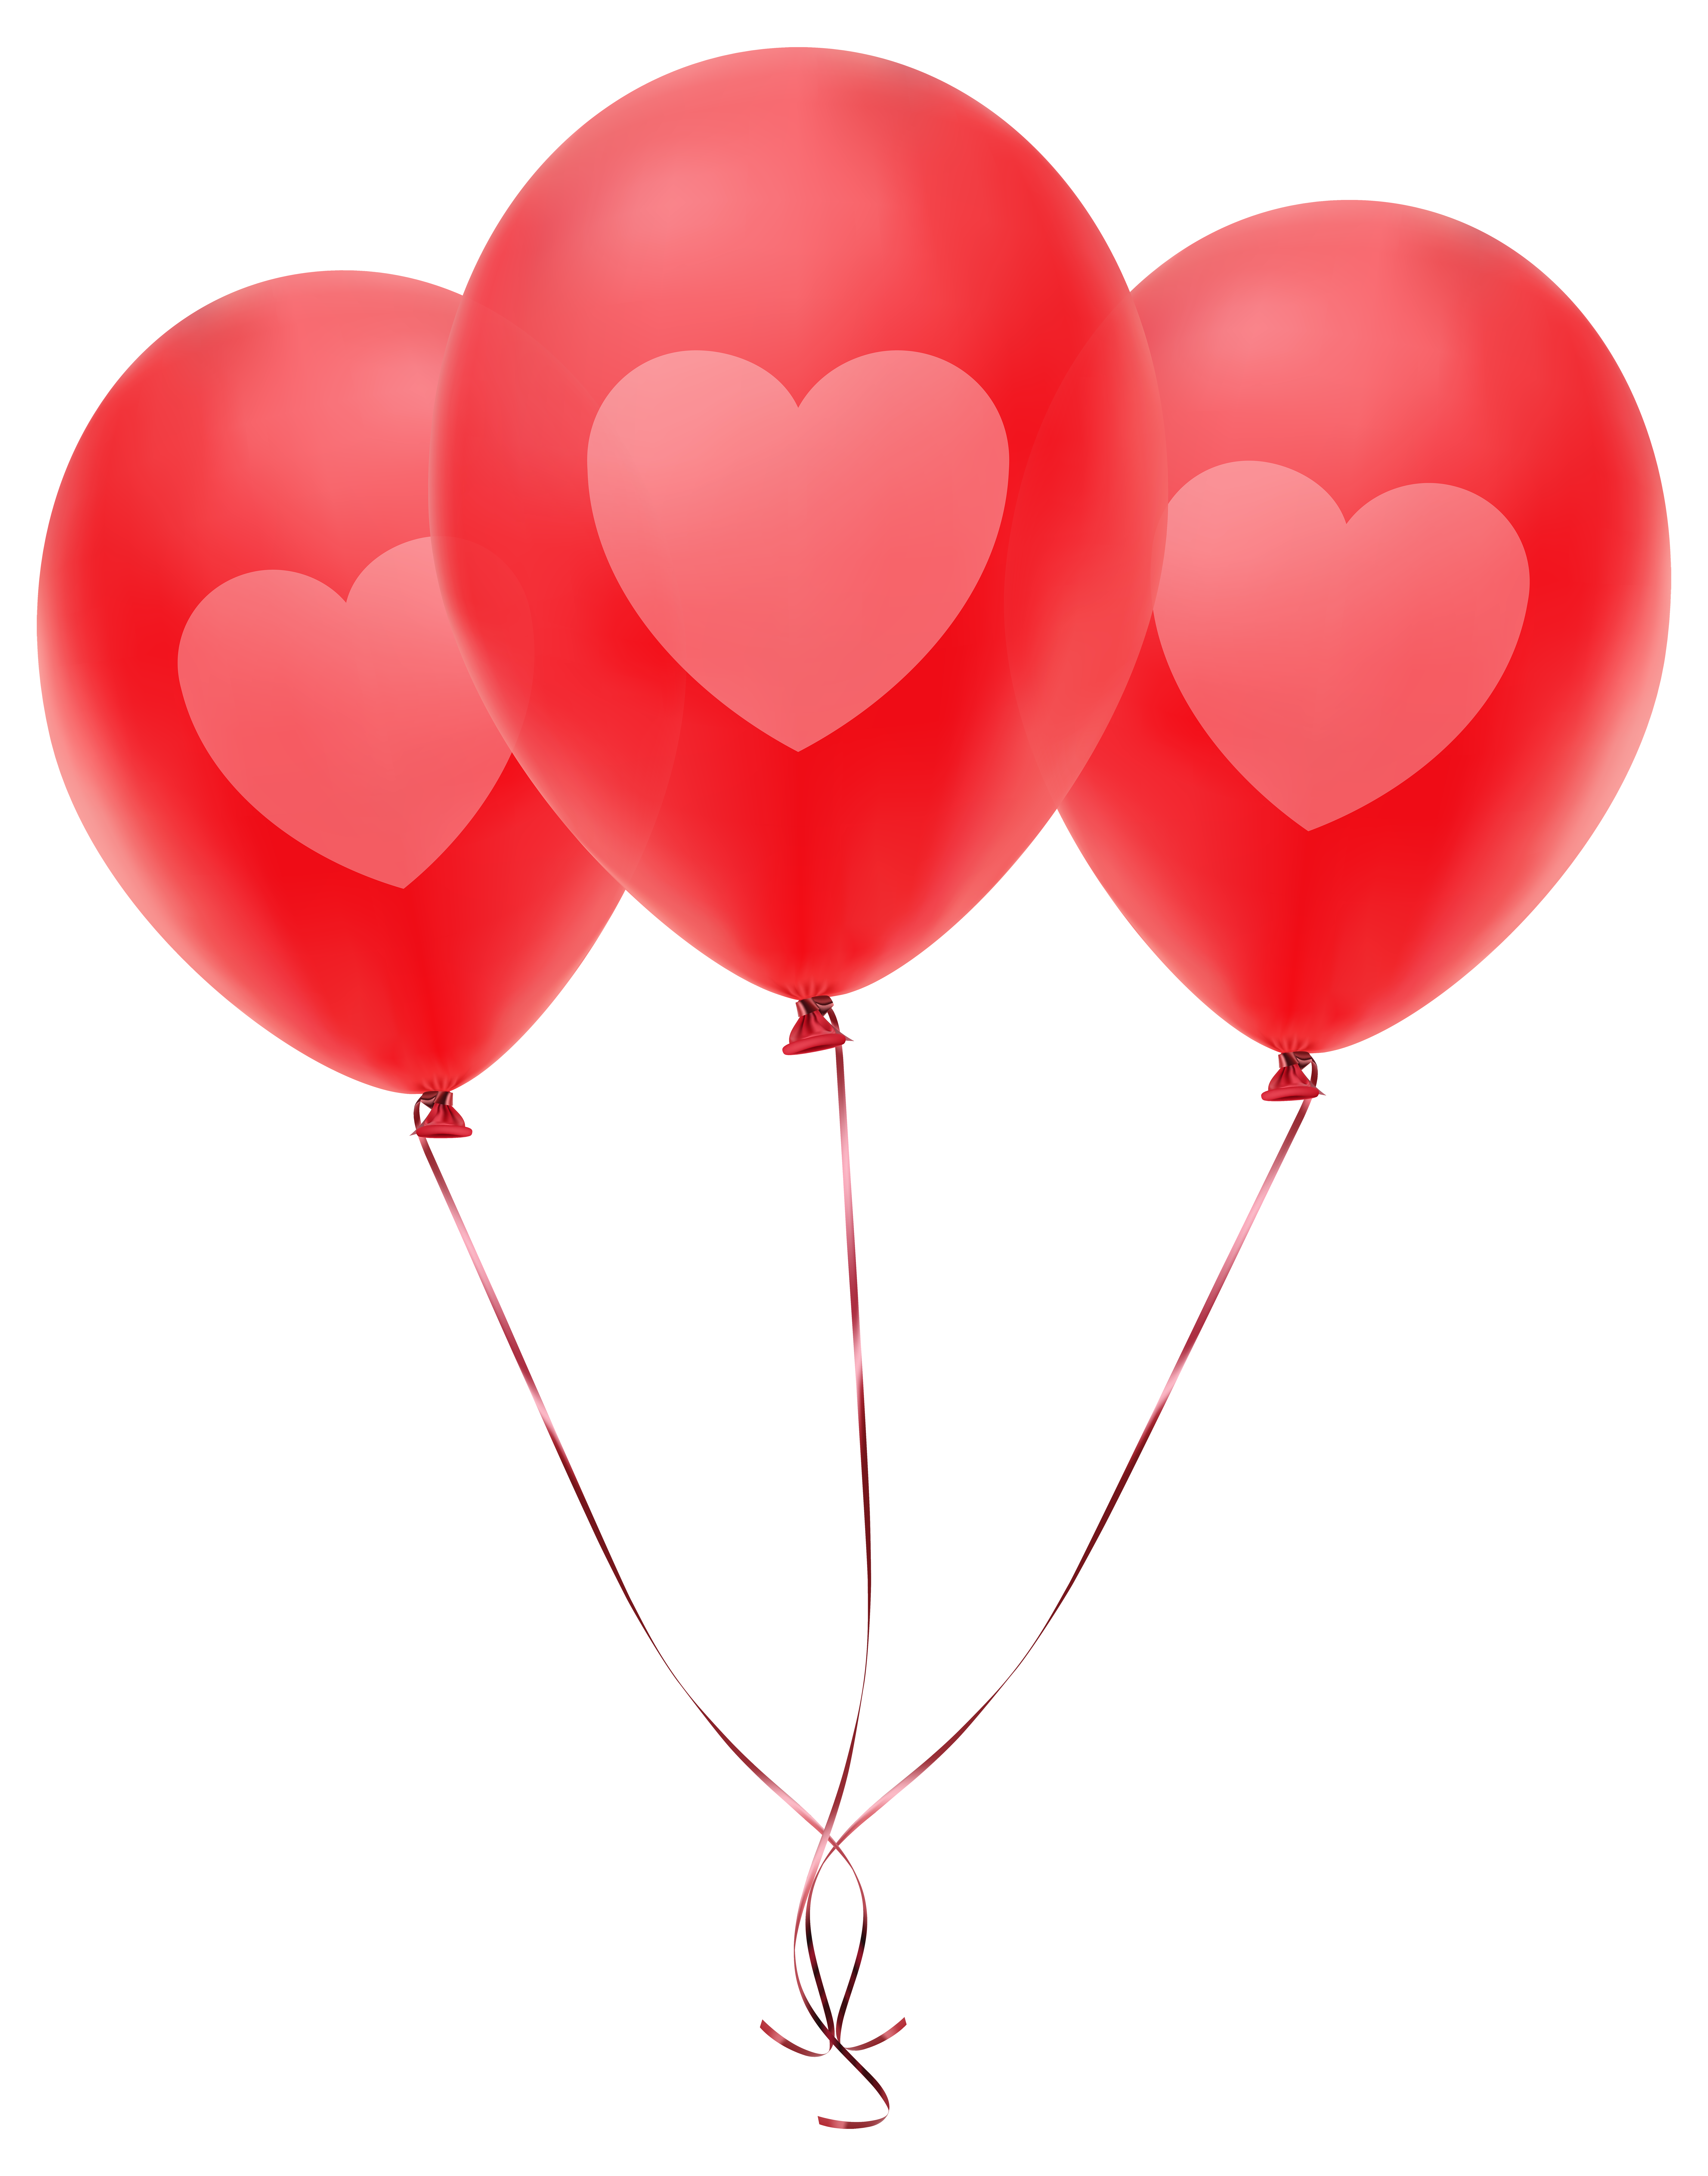 Три воздушных шарика. Воздушный шарик. Красный воздушный шар. Шарики на прозрачном фоне. Воздушные шарики сердечки.